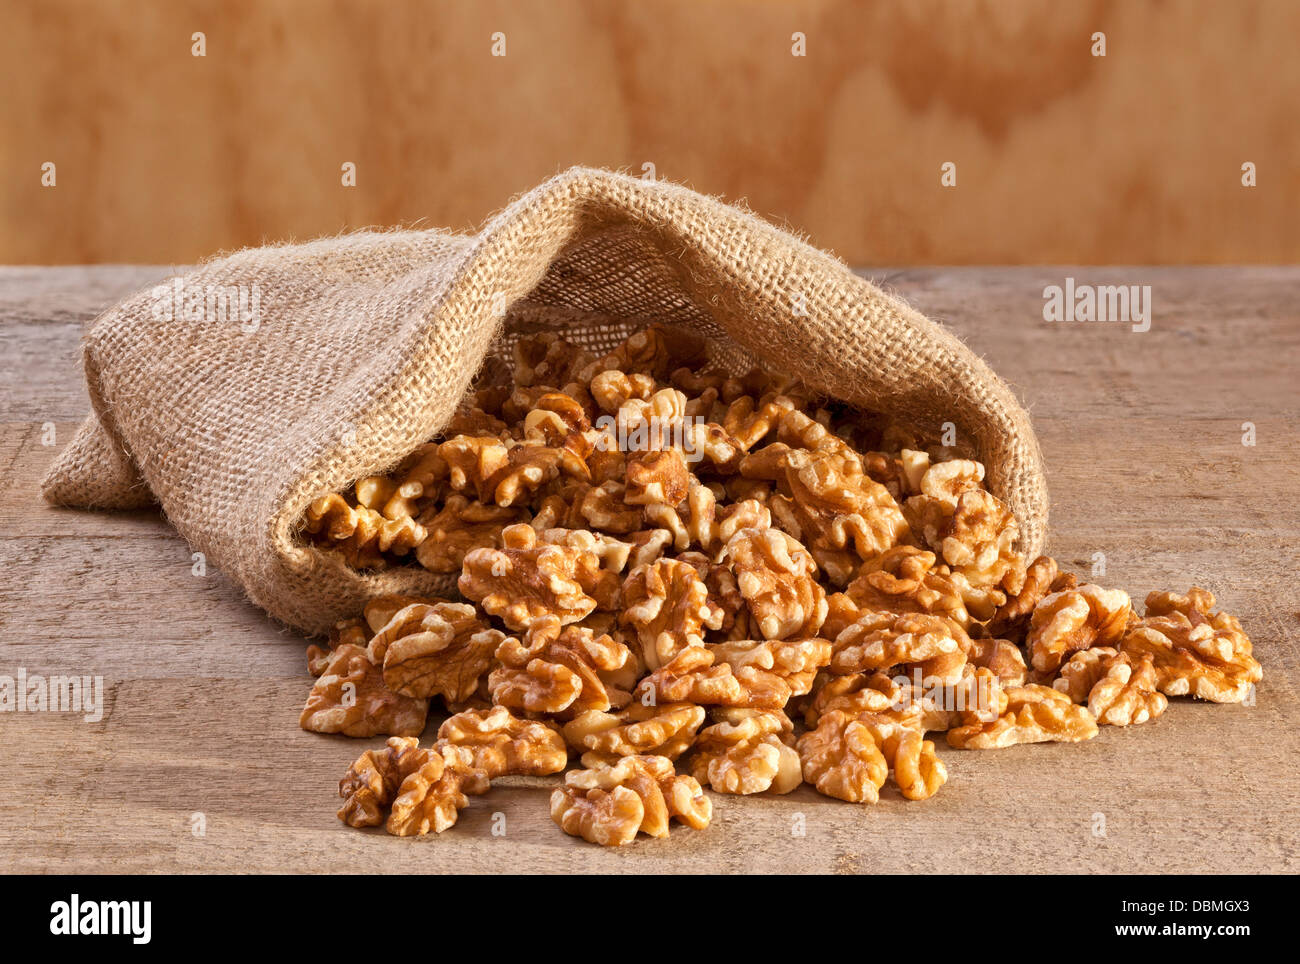 Le noci in un sacco - walnutrs sgusciate fuoriuscita da una tela o sacco di iuta, su un listone rustico sfondo. Foto Stock